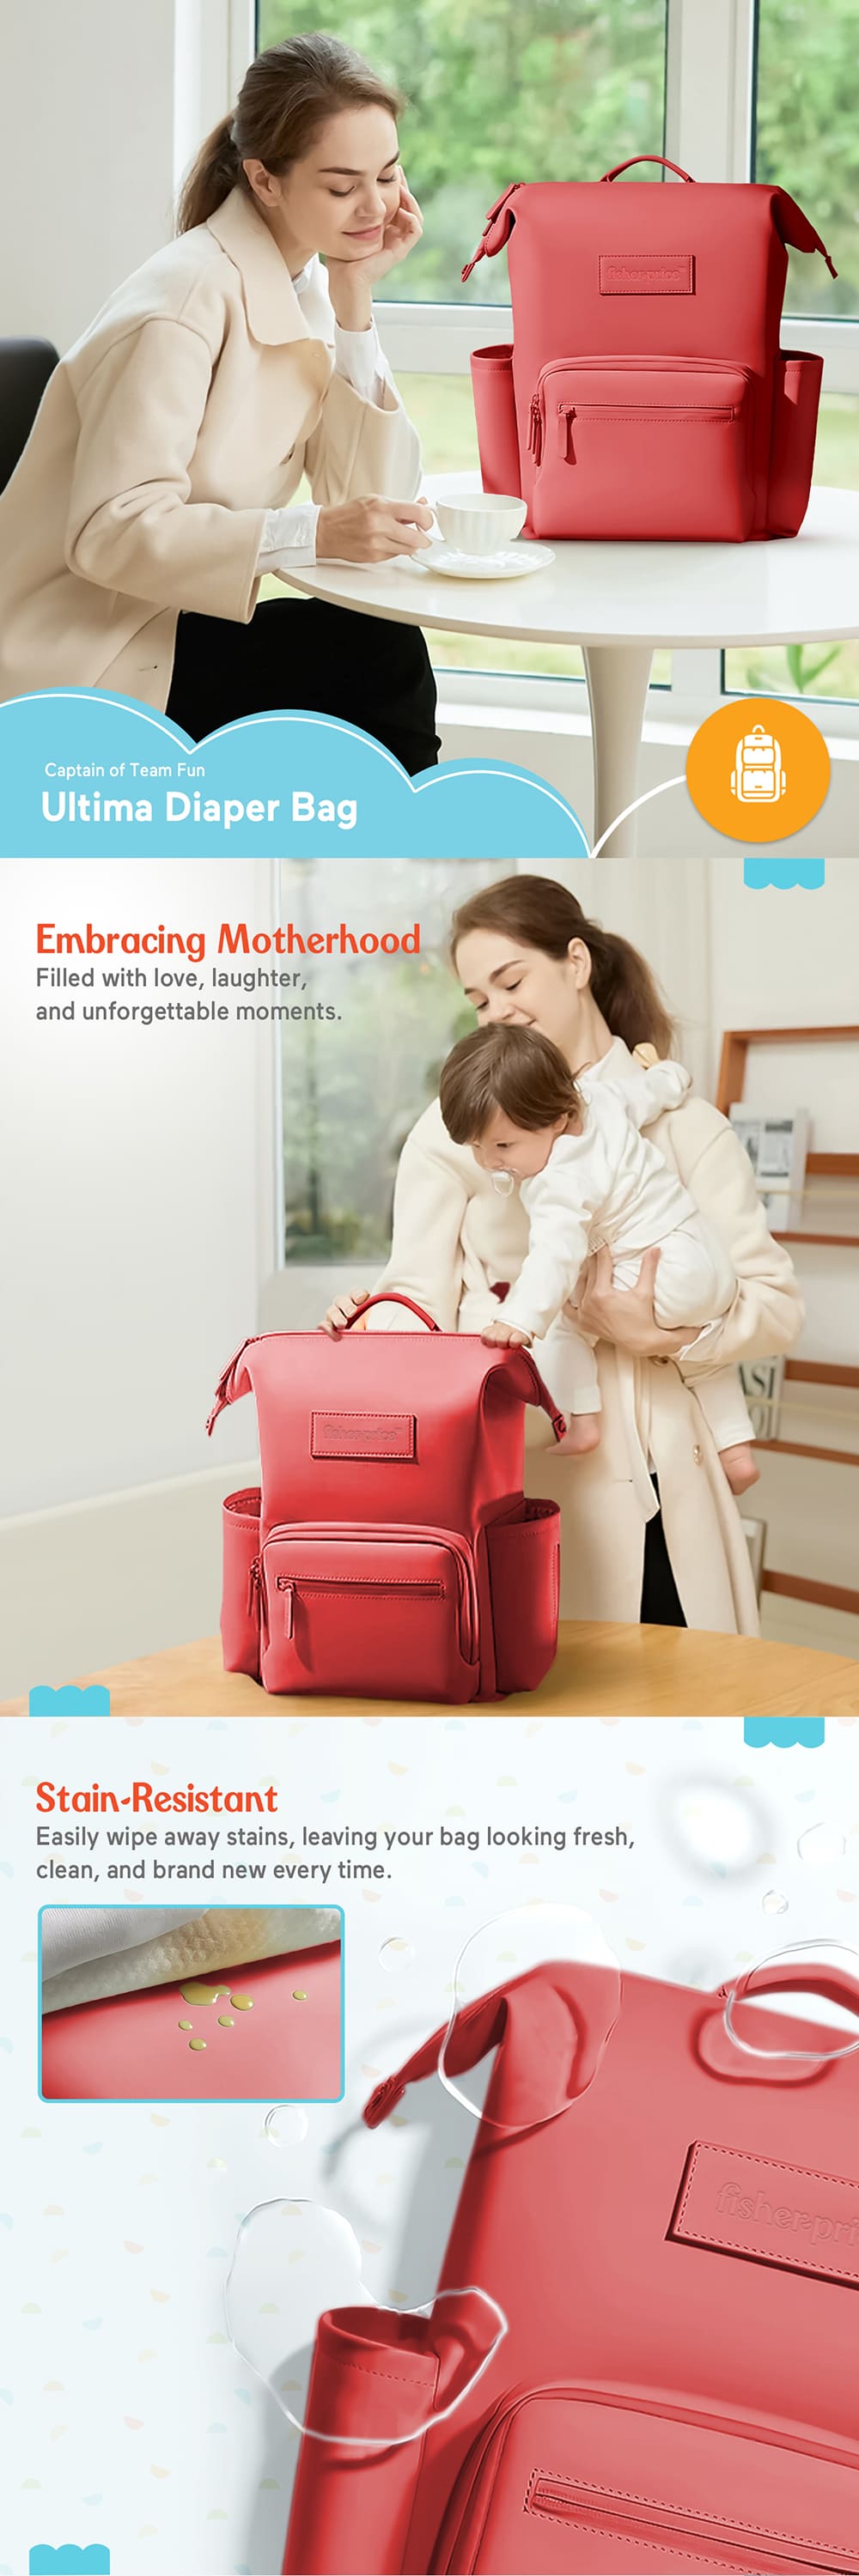 Eembracing Motherhood with Baby Diaper Bag